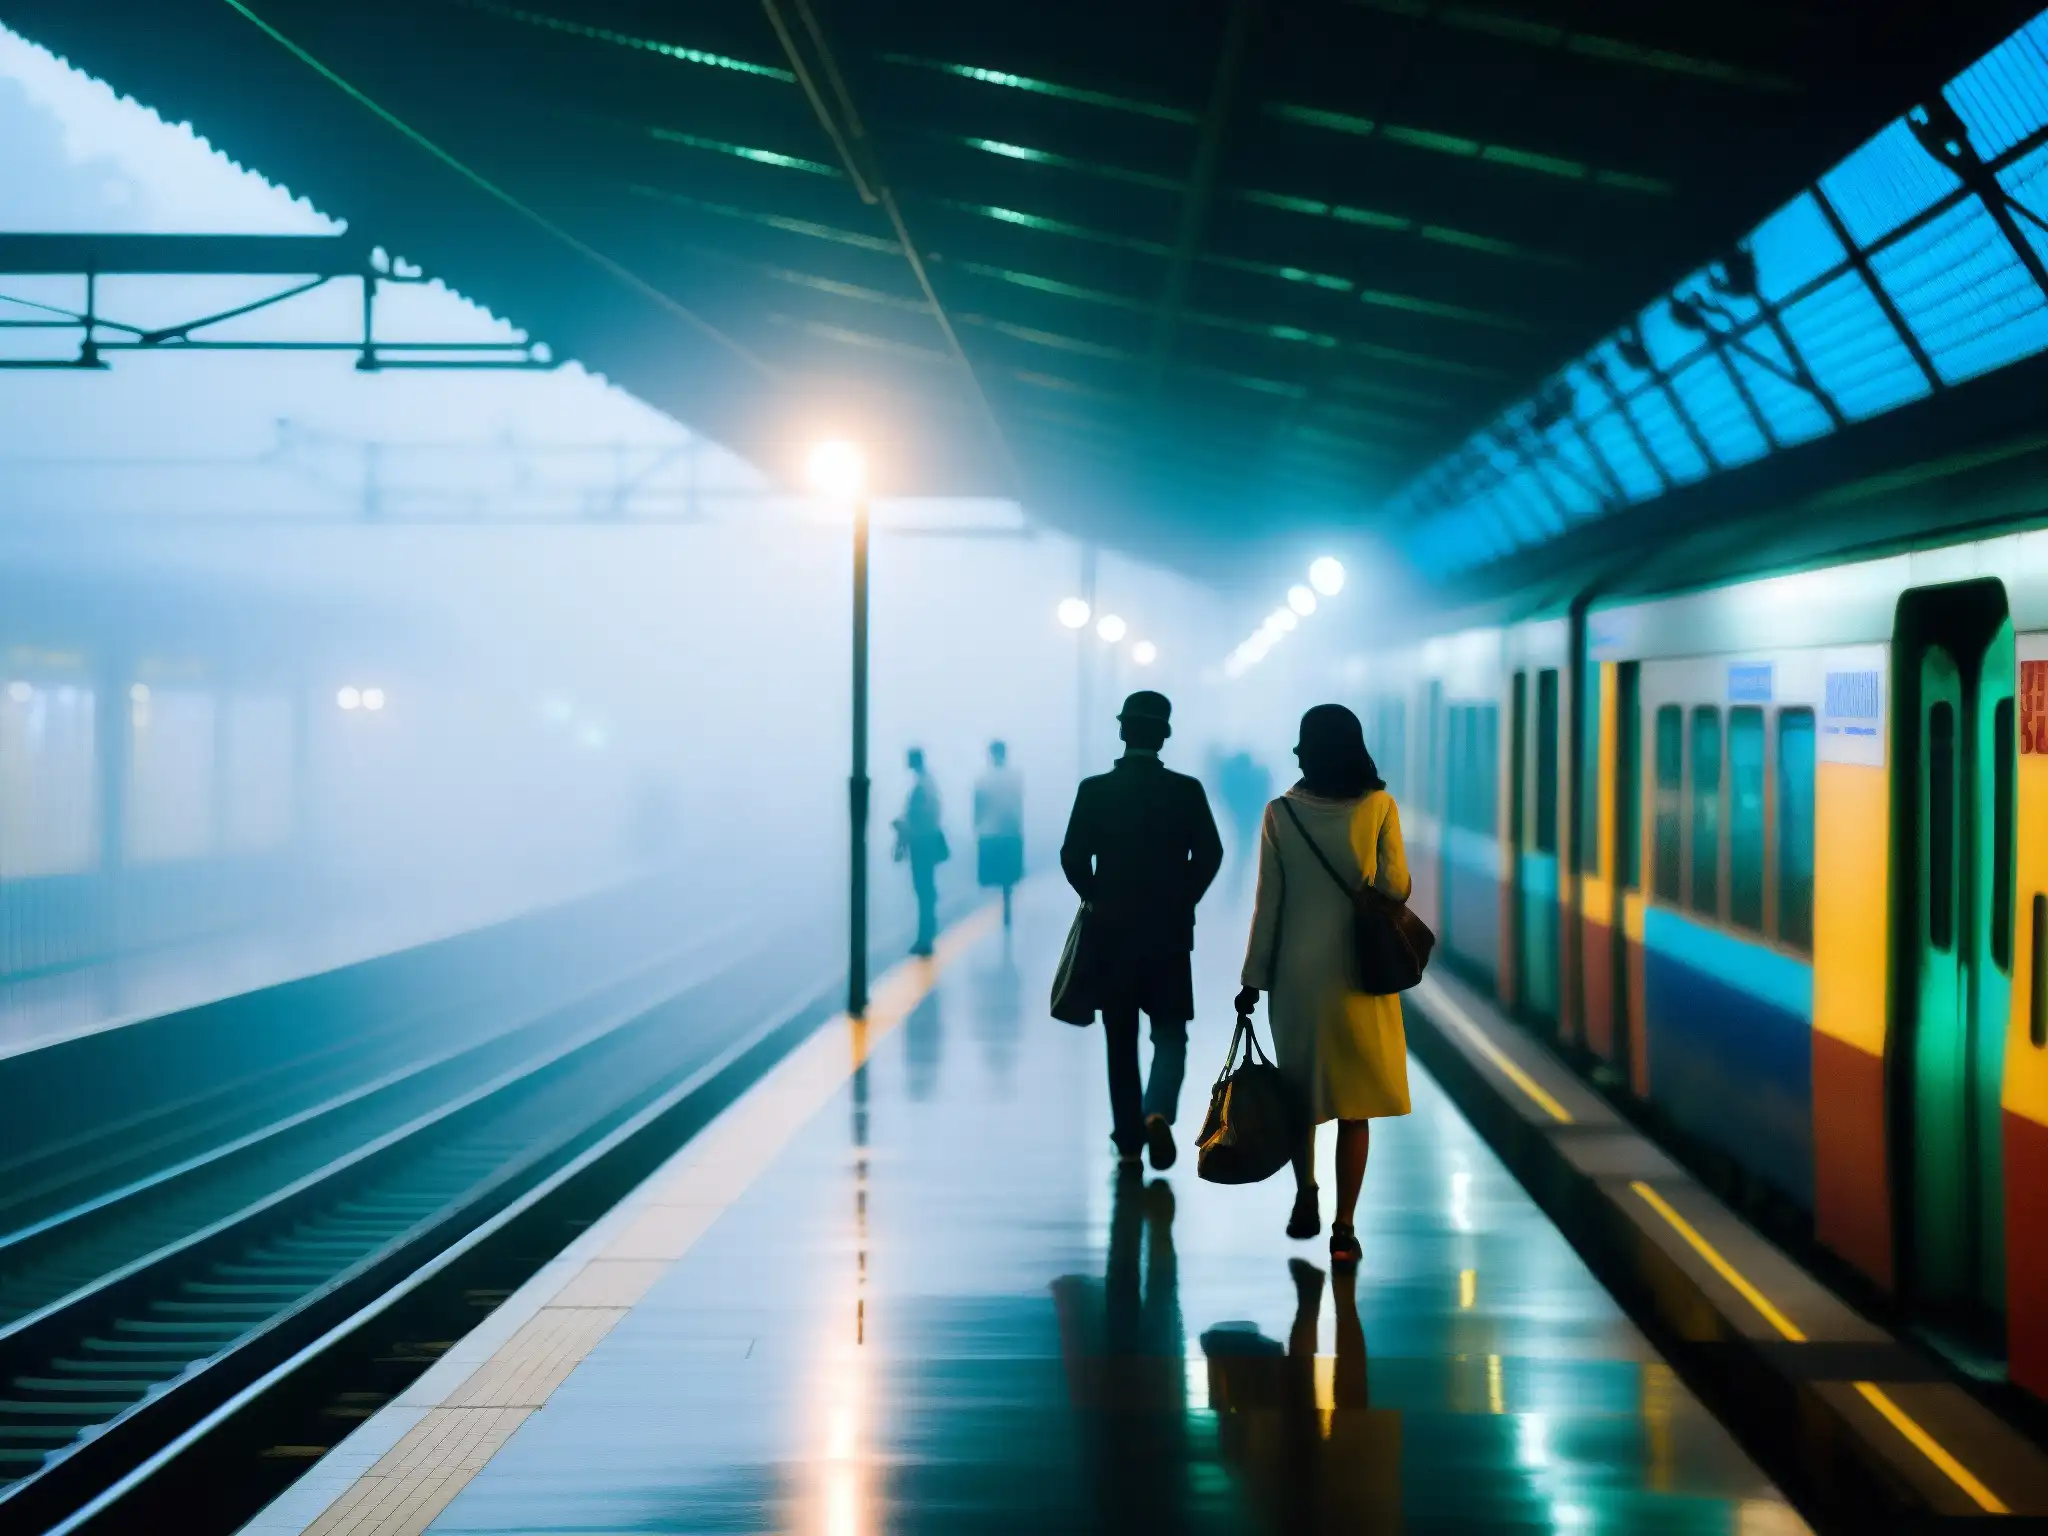 La neblina cubre la plataforma del metro de Rabindra Sarobar, donde los pasajeros esperan entre la niebla